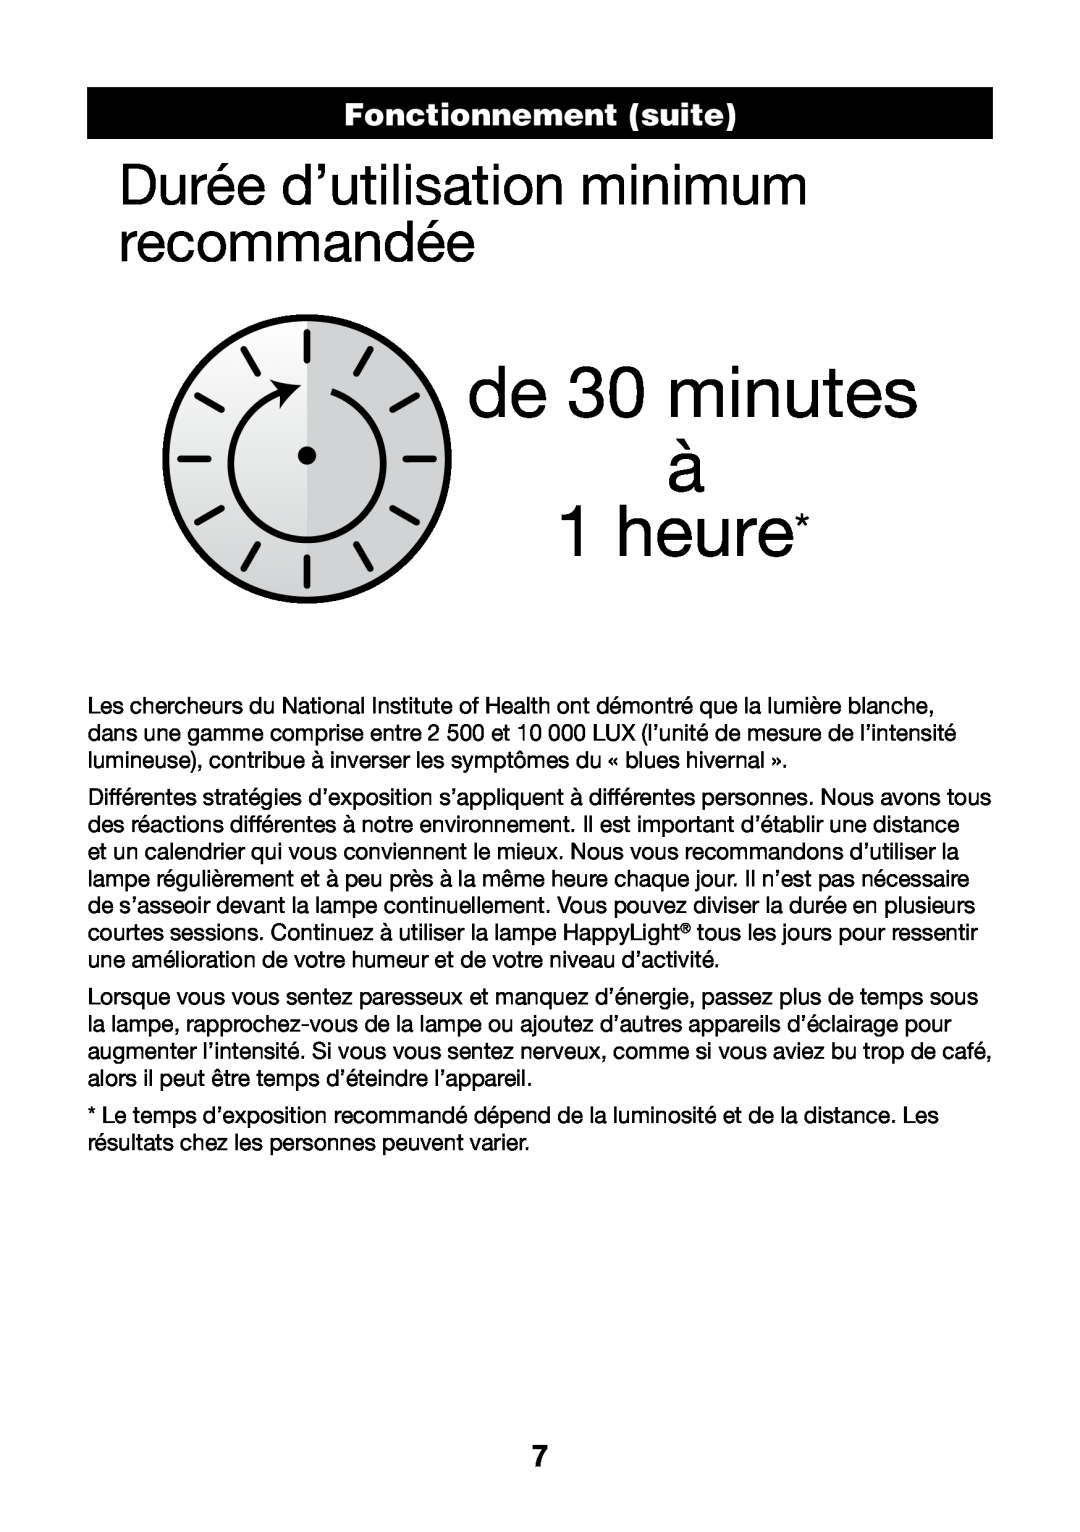 Verilux VT05 manual Durée d’utilisation minimum recommandée, FonctionnementHEADER suite, de 30 minutes à 1 heure 